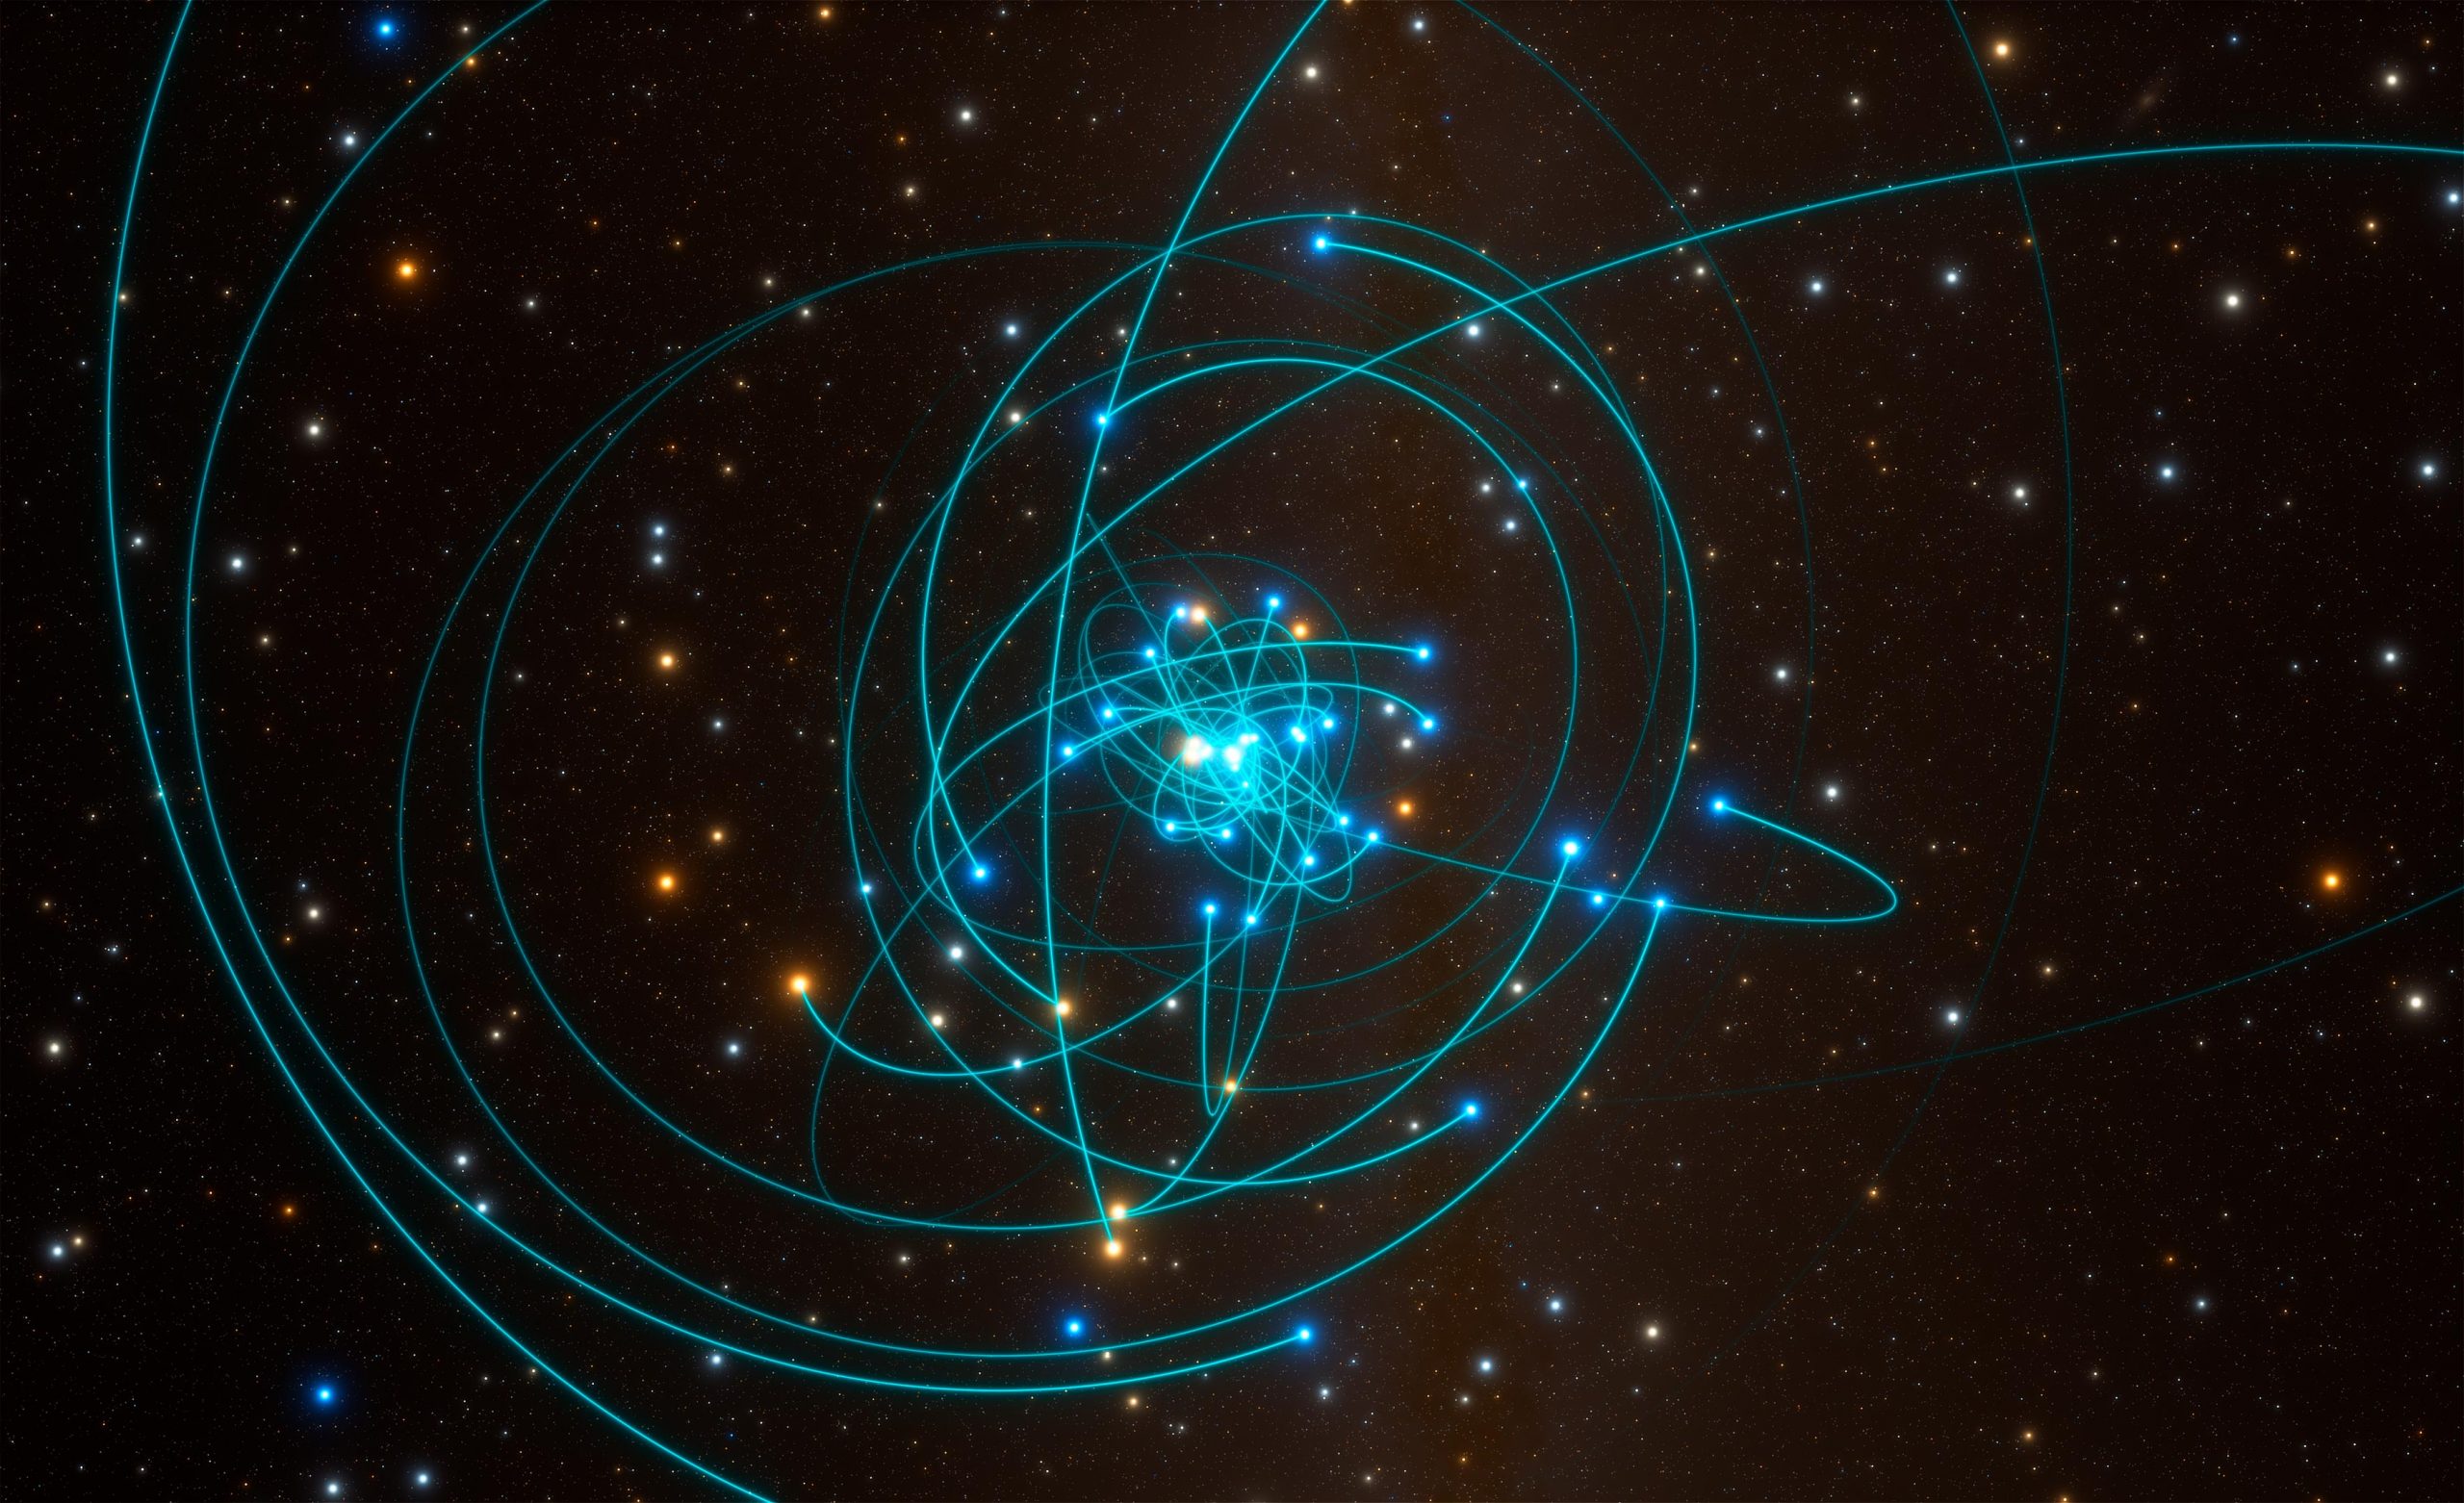 Dráhy hvězd okolo černé díry Sgr A*. Autor: ESO/L. Calçada/spaceengine.org